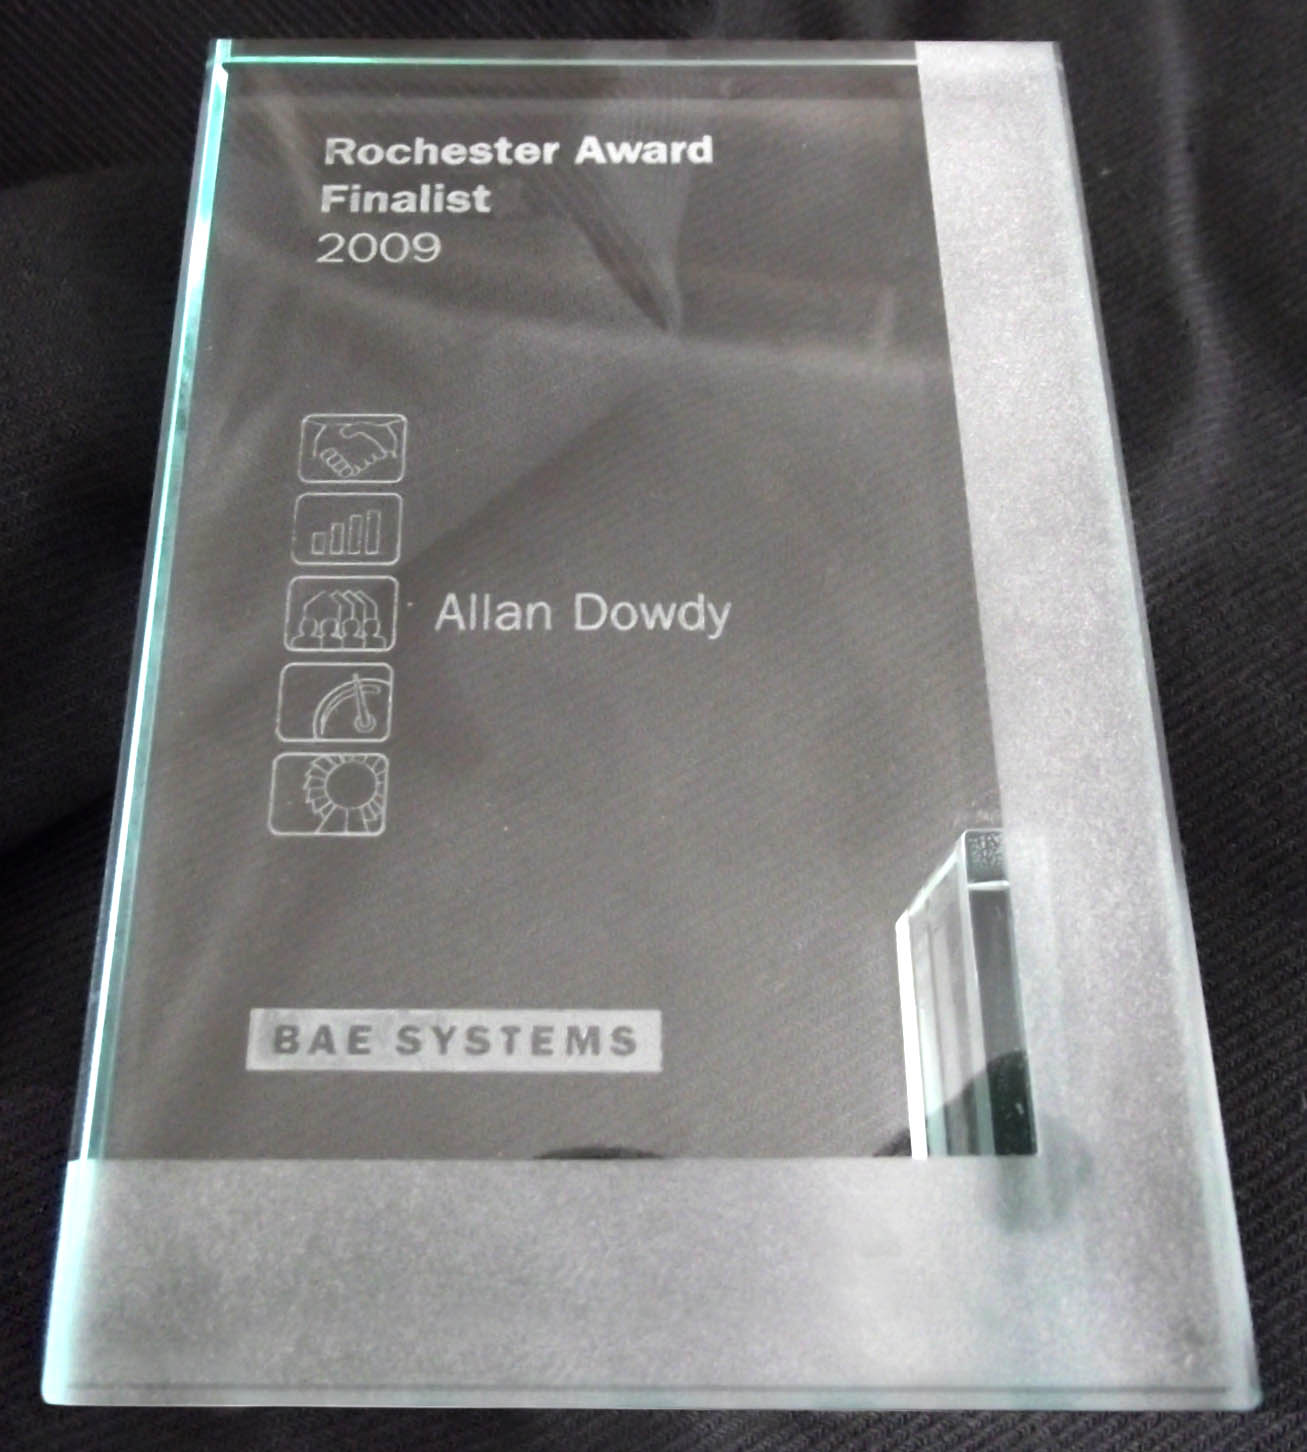 Rochester Award to Allan Dowdy